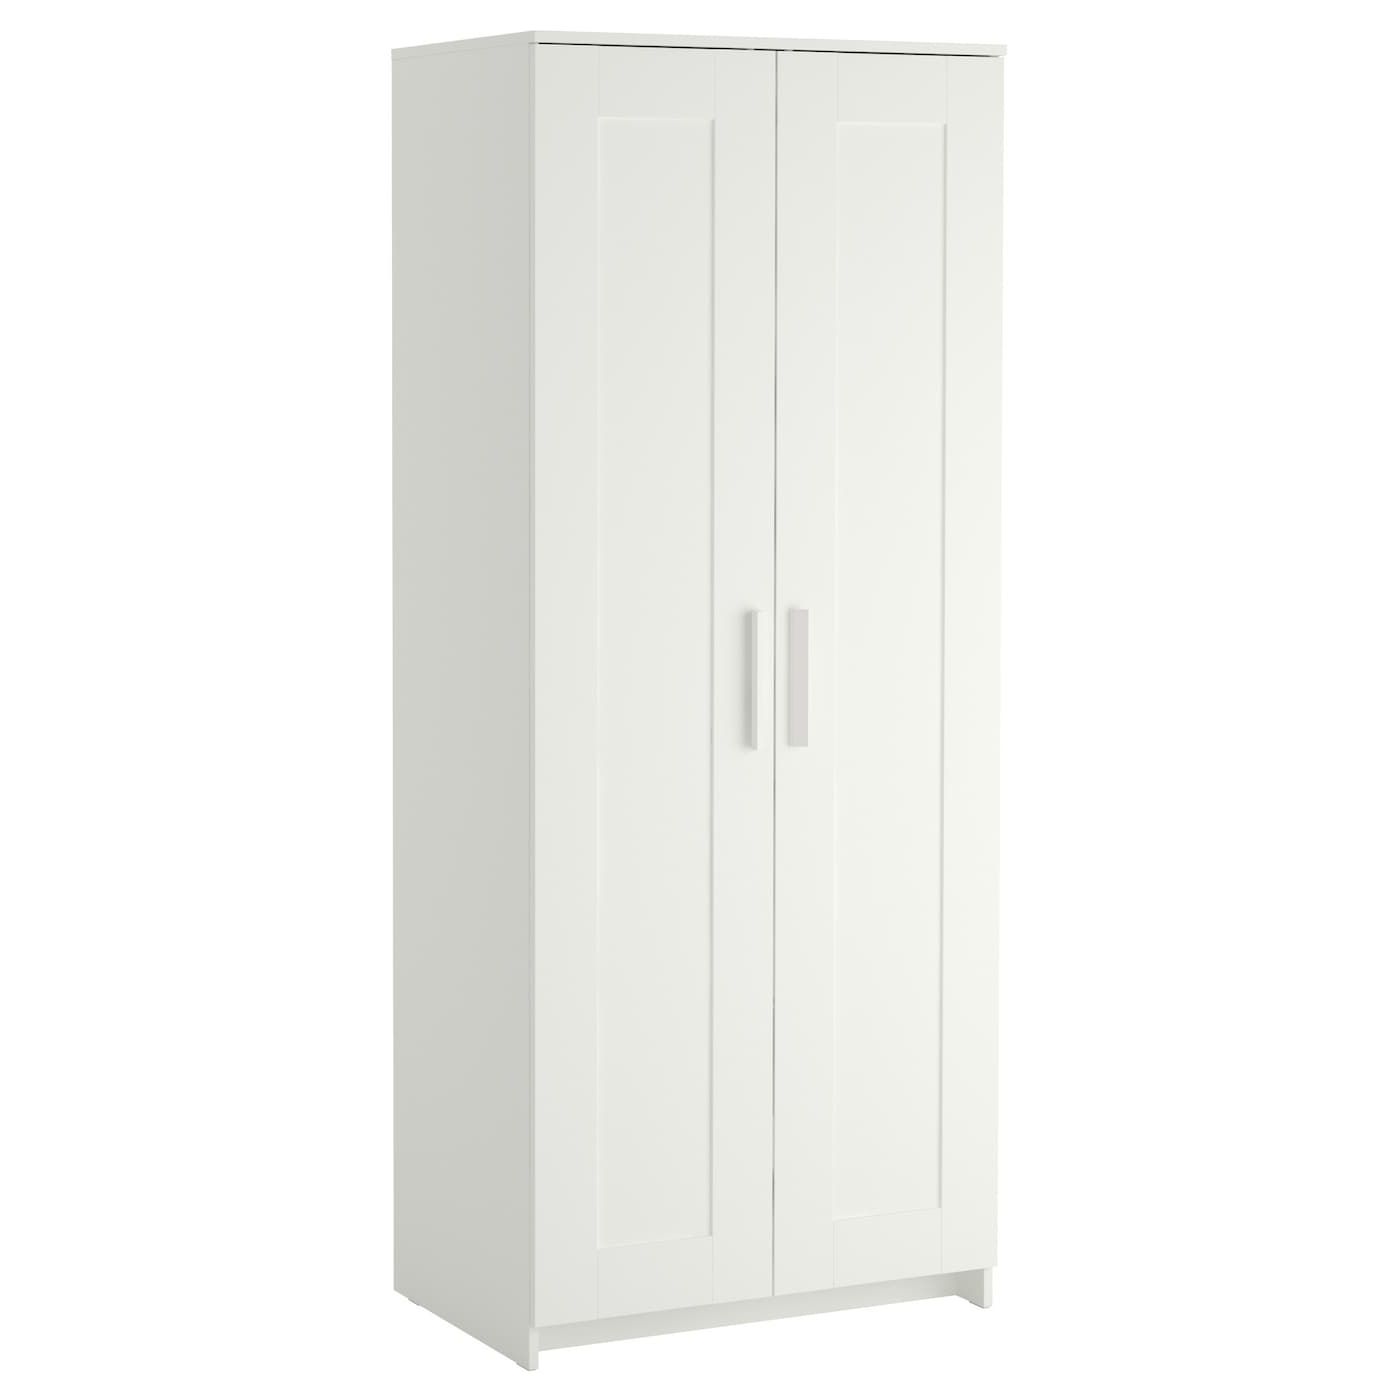 Brimnes Wardrobe With 2 Doors, White, 30 3/4x74 3/4" – Ikea In 2 Door Wardrobes (View 5 of 20)